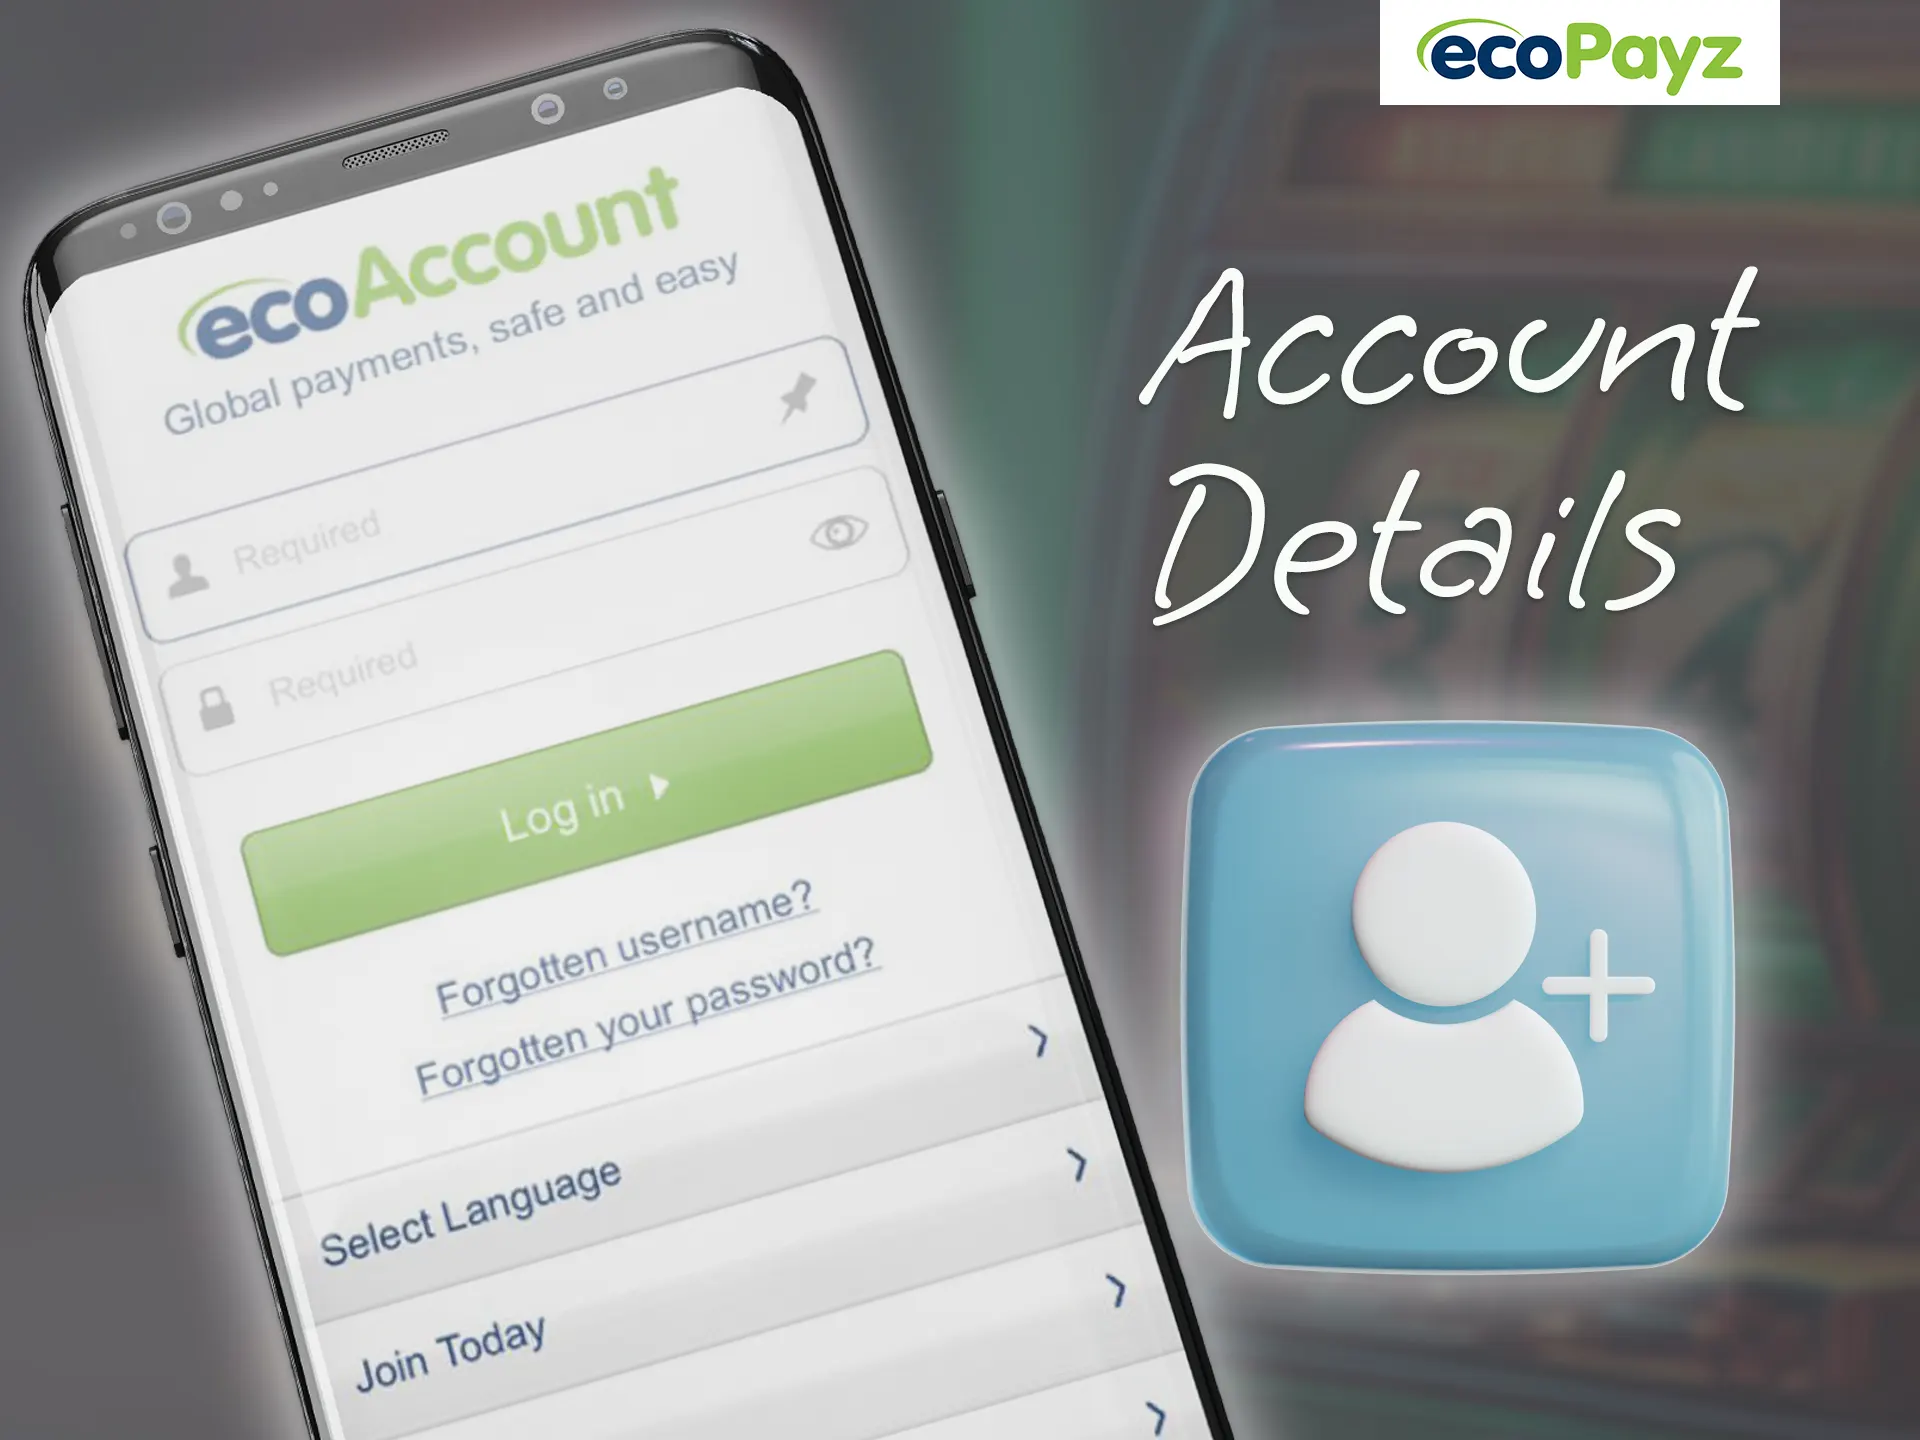 Register an ecoPayz account.